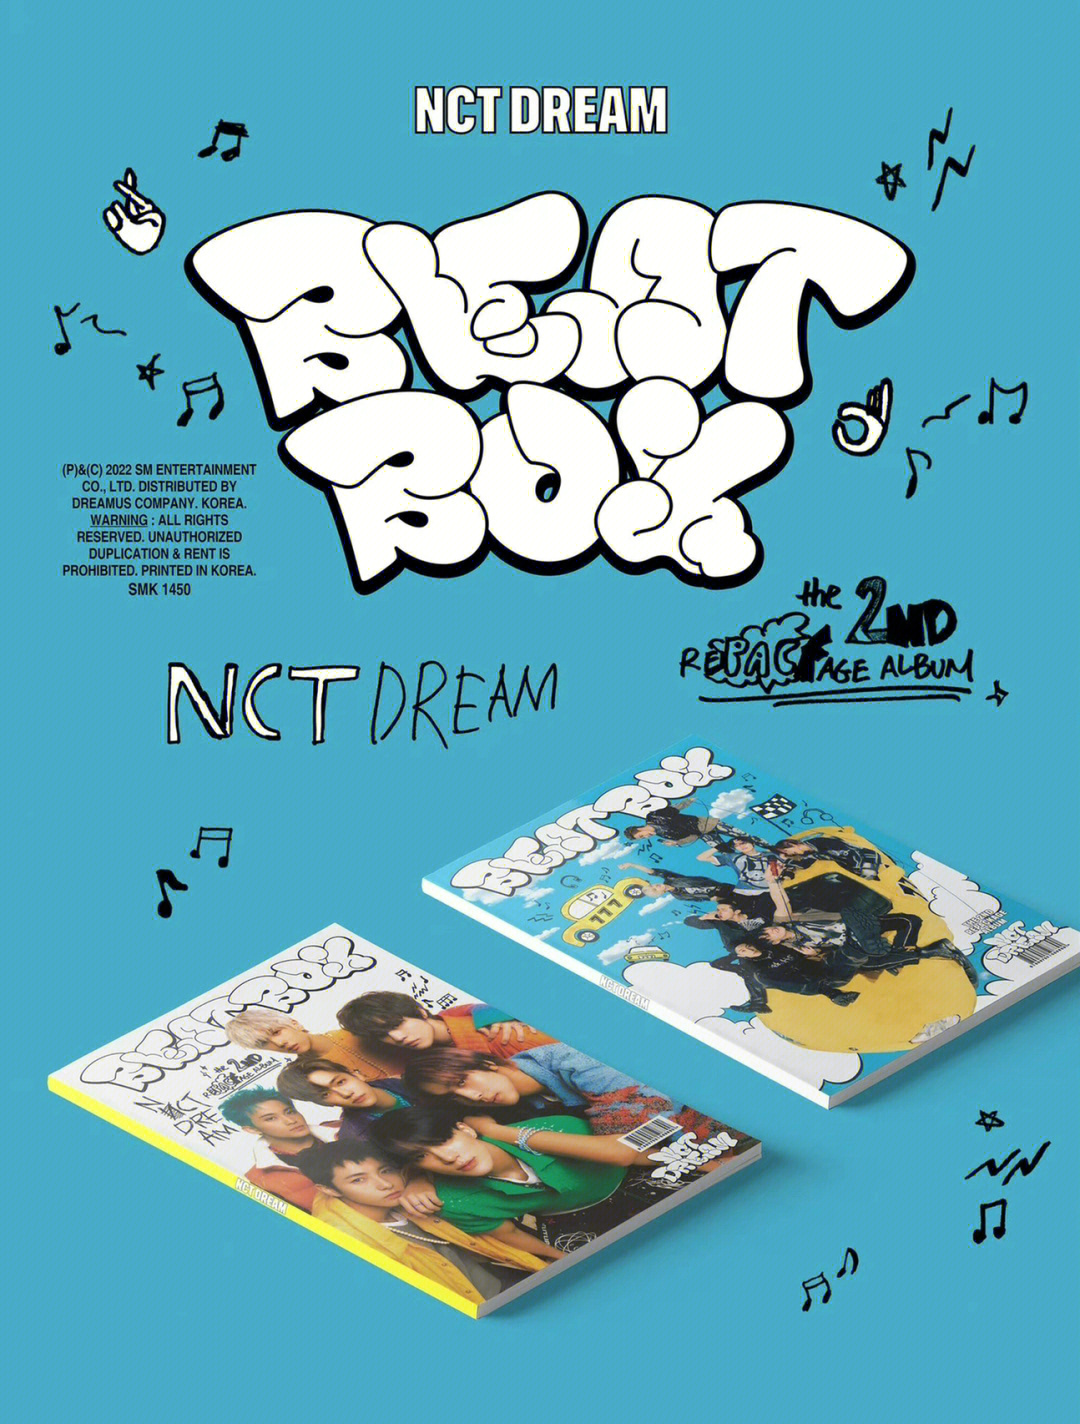 beatbox盒子图片